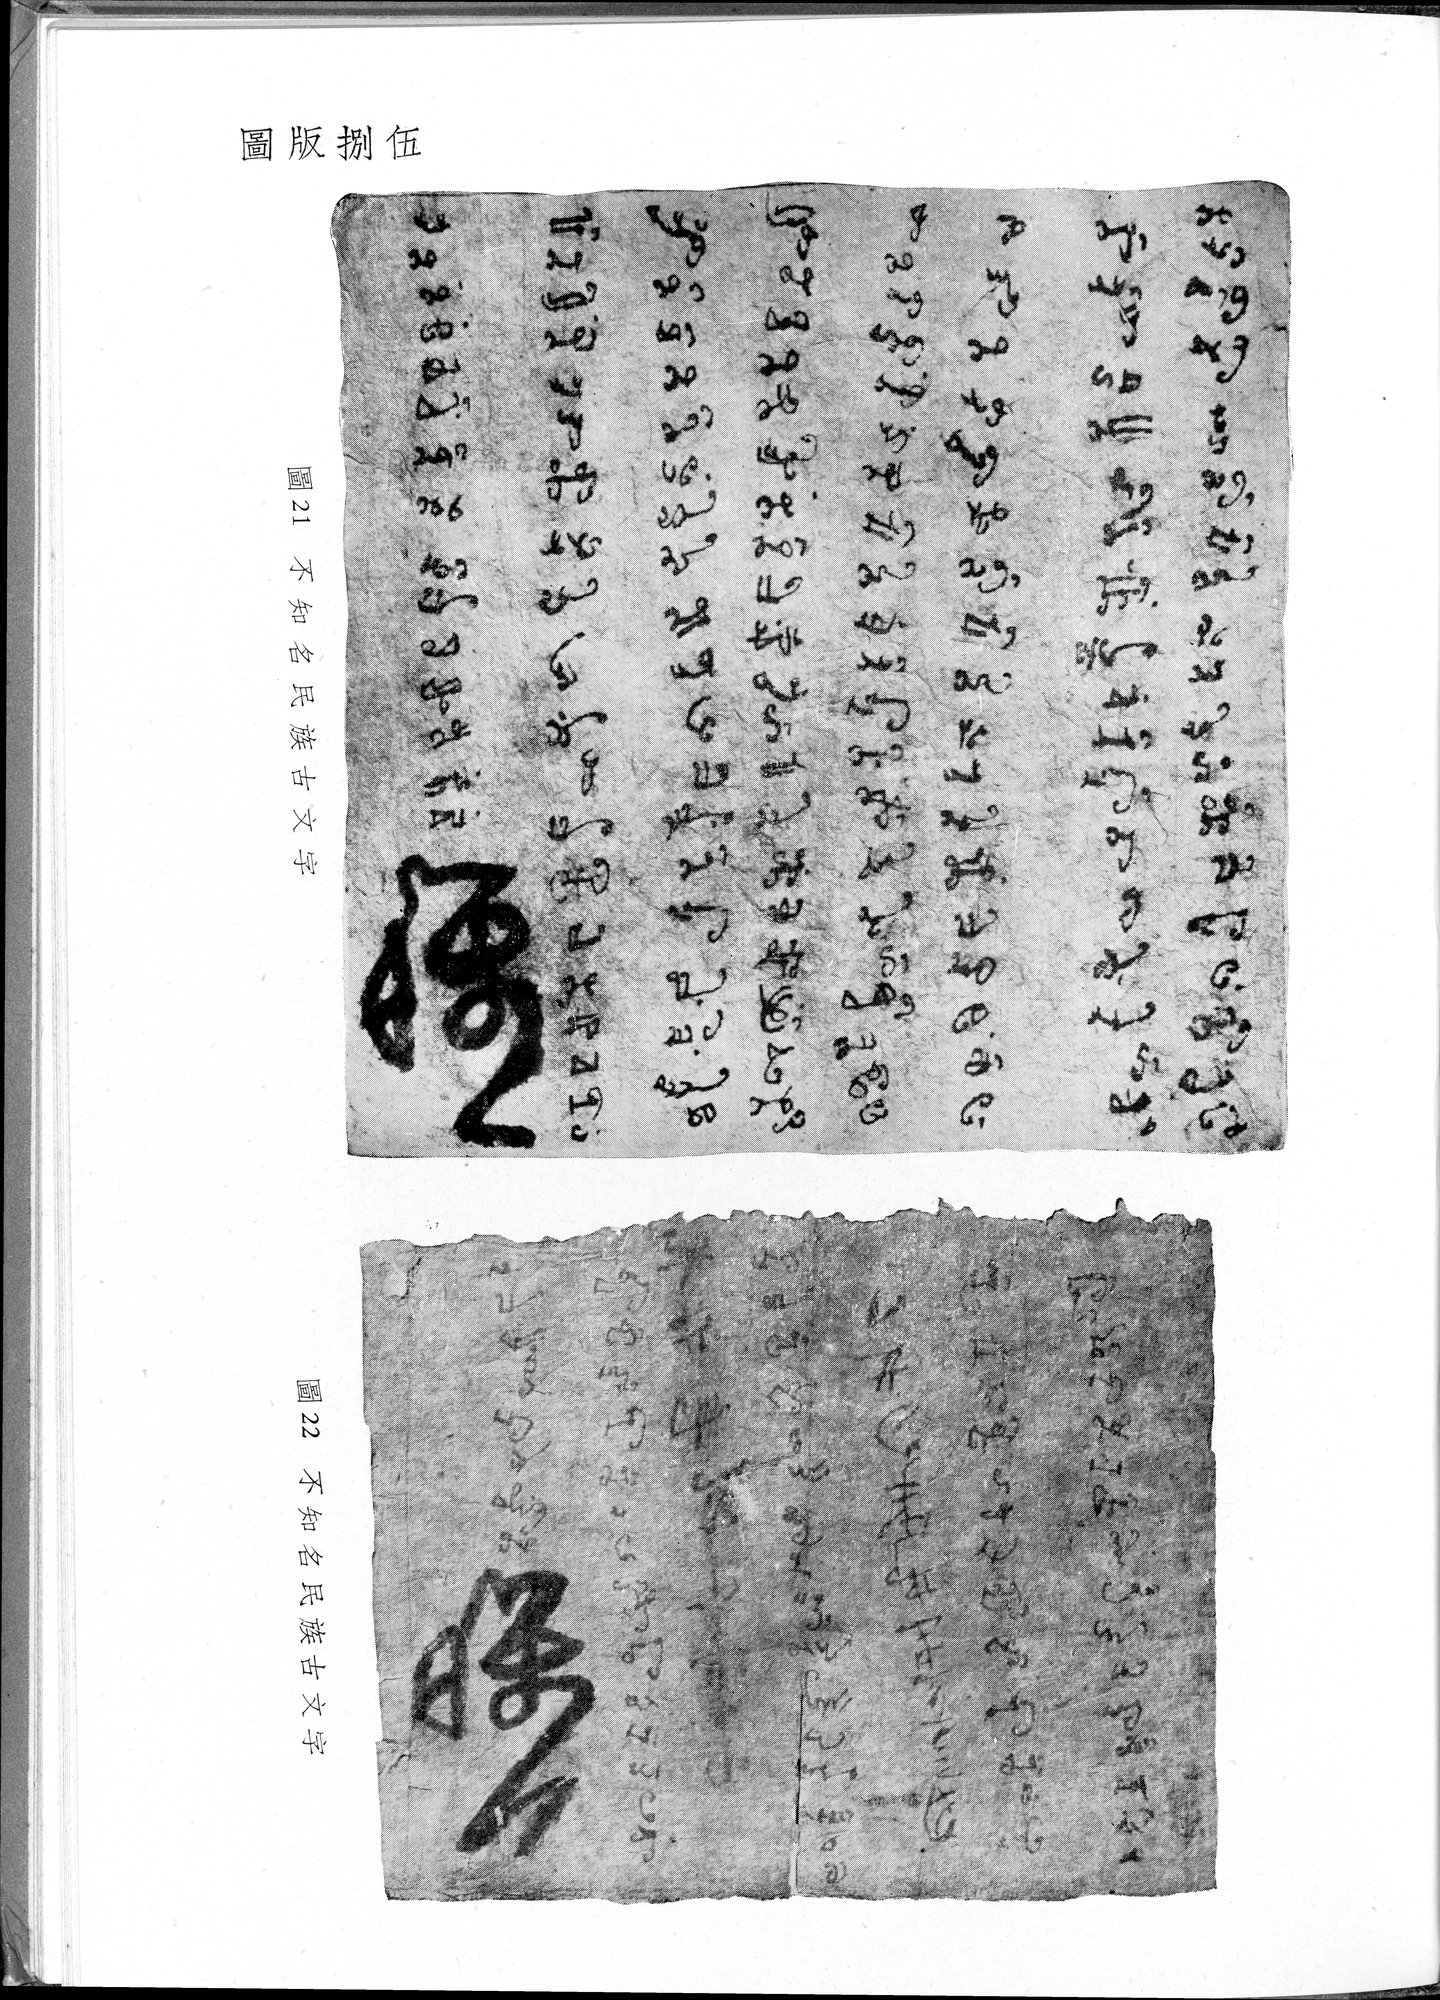 塔里木盆地考古記 : vol.1 / 319 ページ（白黒高解像度画像）